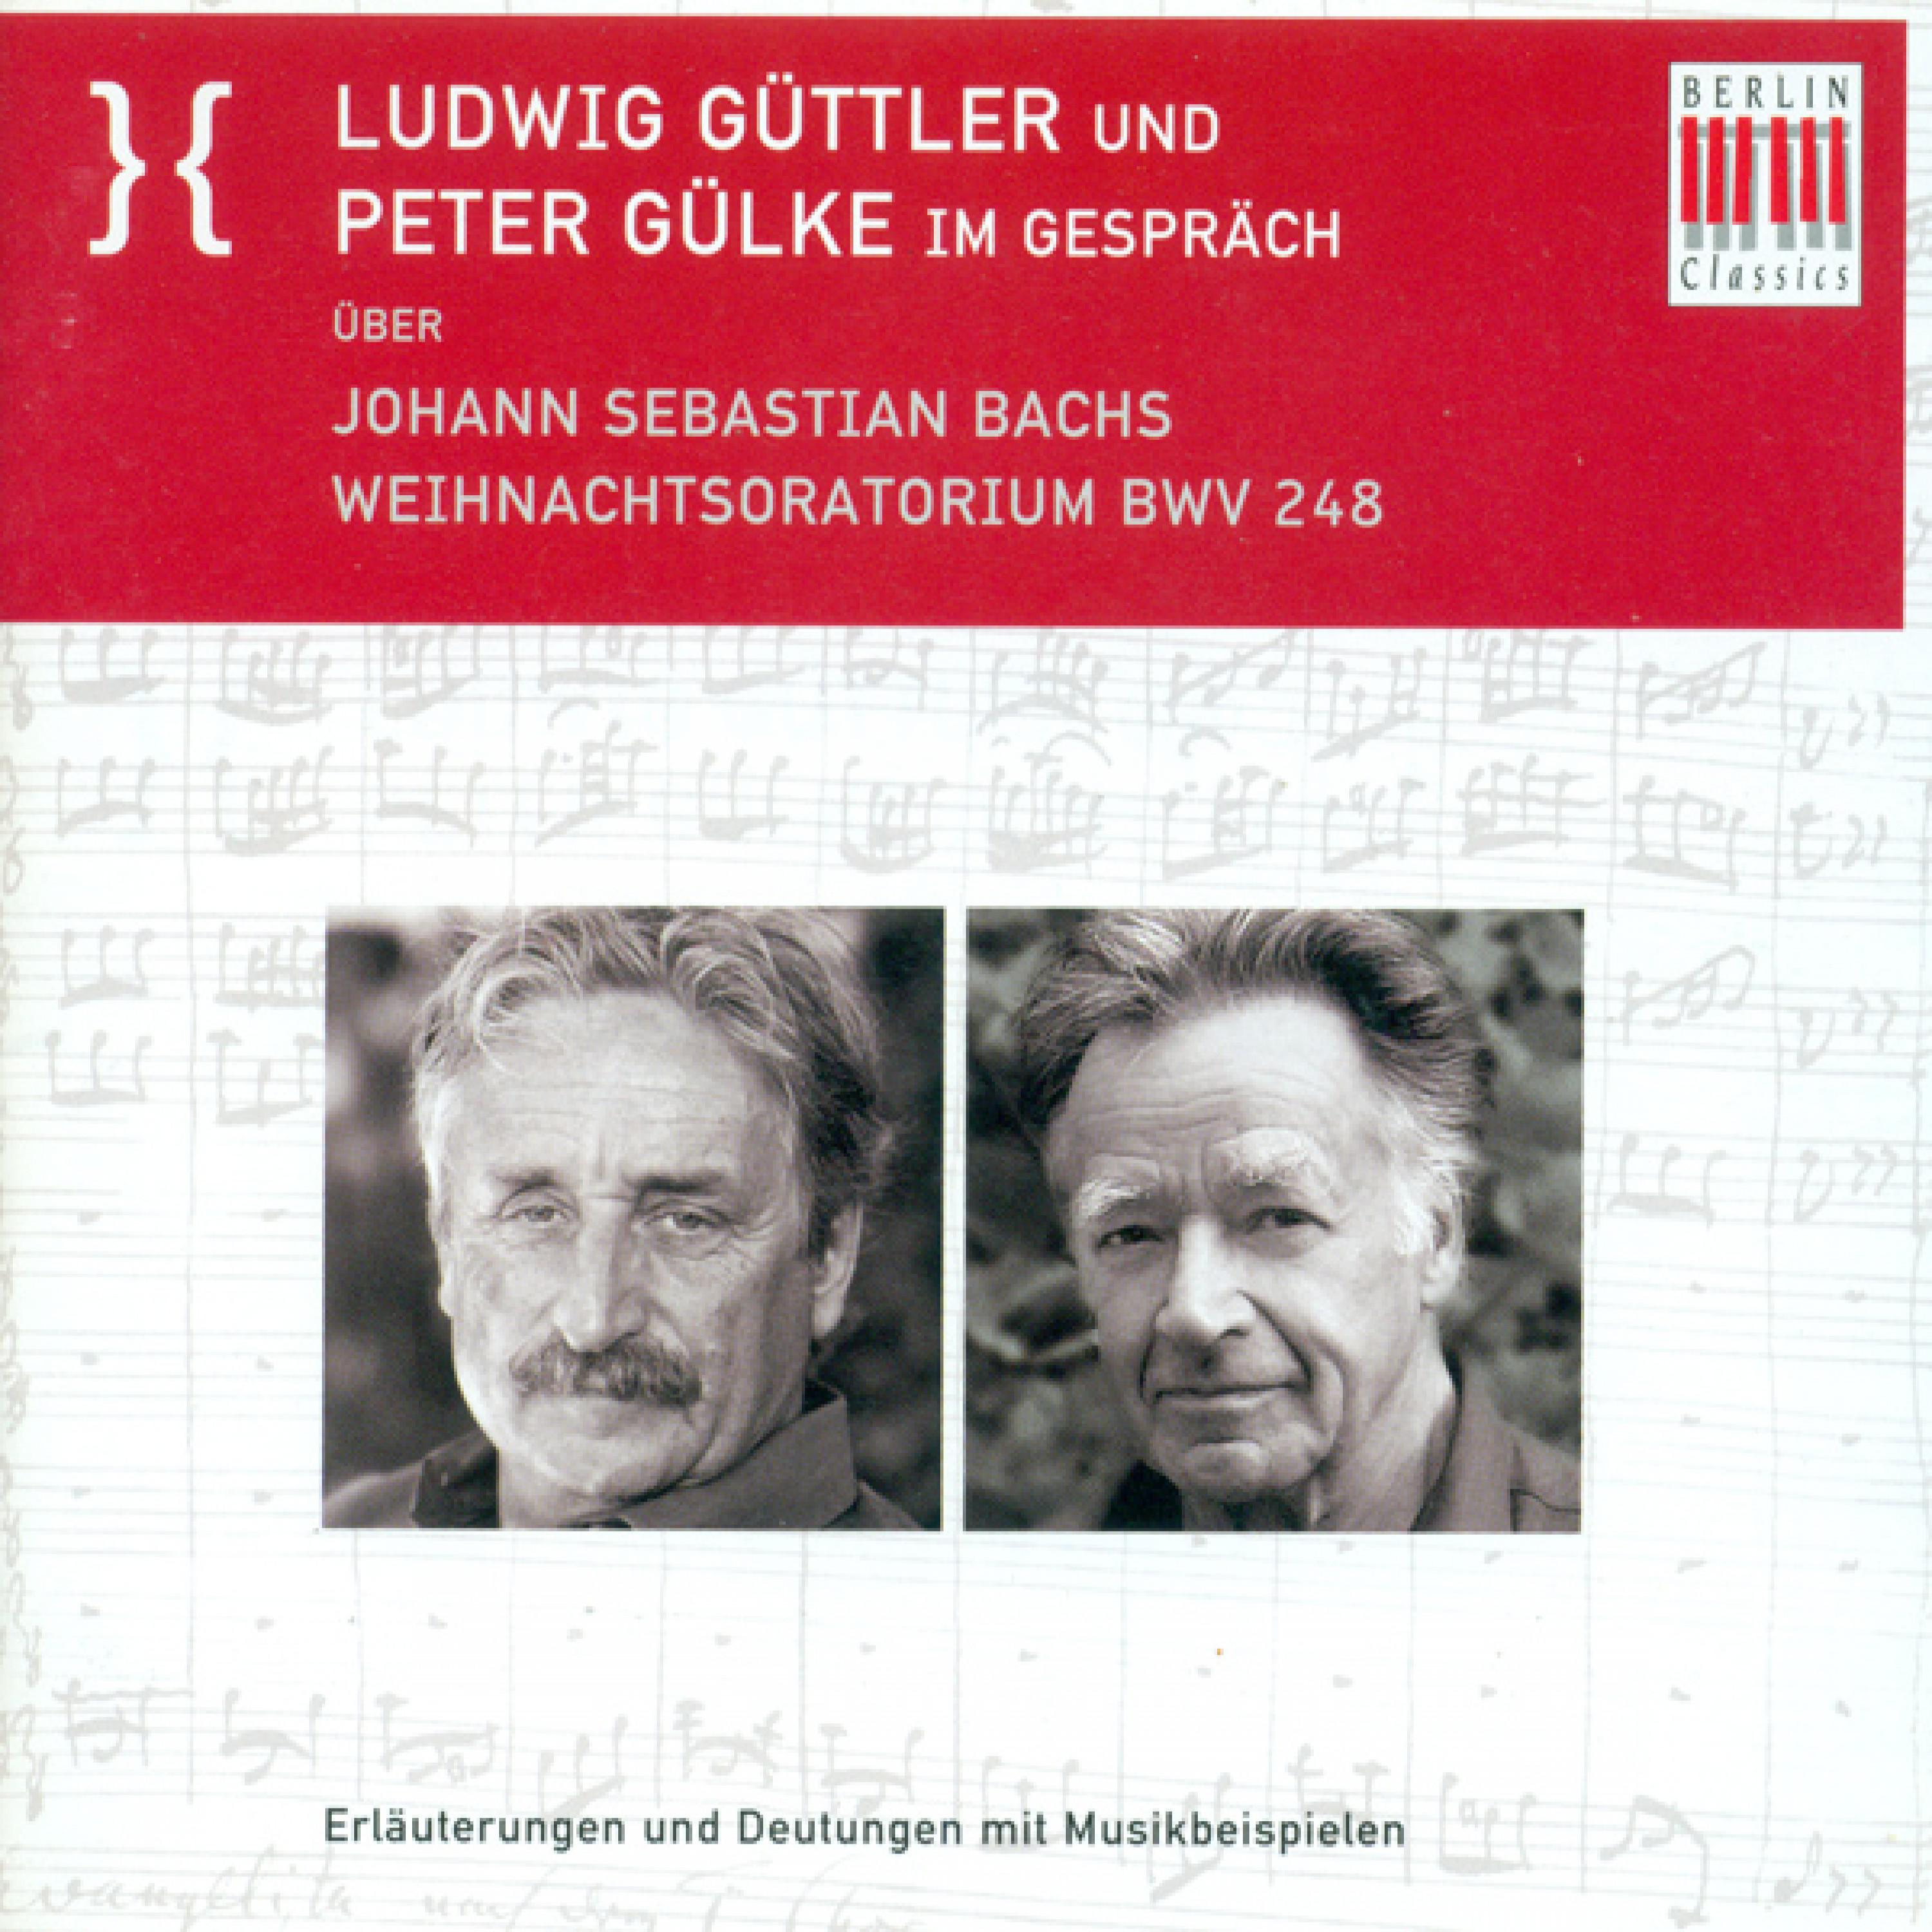 Ludwig Guttler und Peter Gulke Im Gesprach uber Johann Sebastian Bach's Weihnachtsoratorium BWV 248: Der Choral und der Bezug zur Matthauspassion